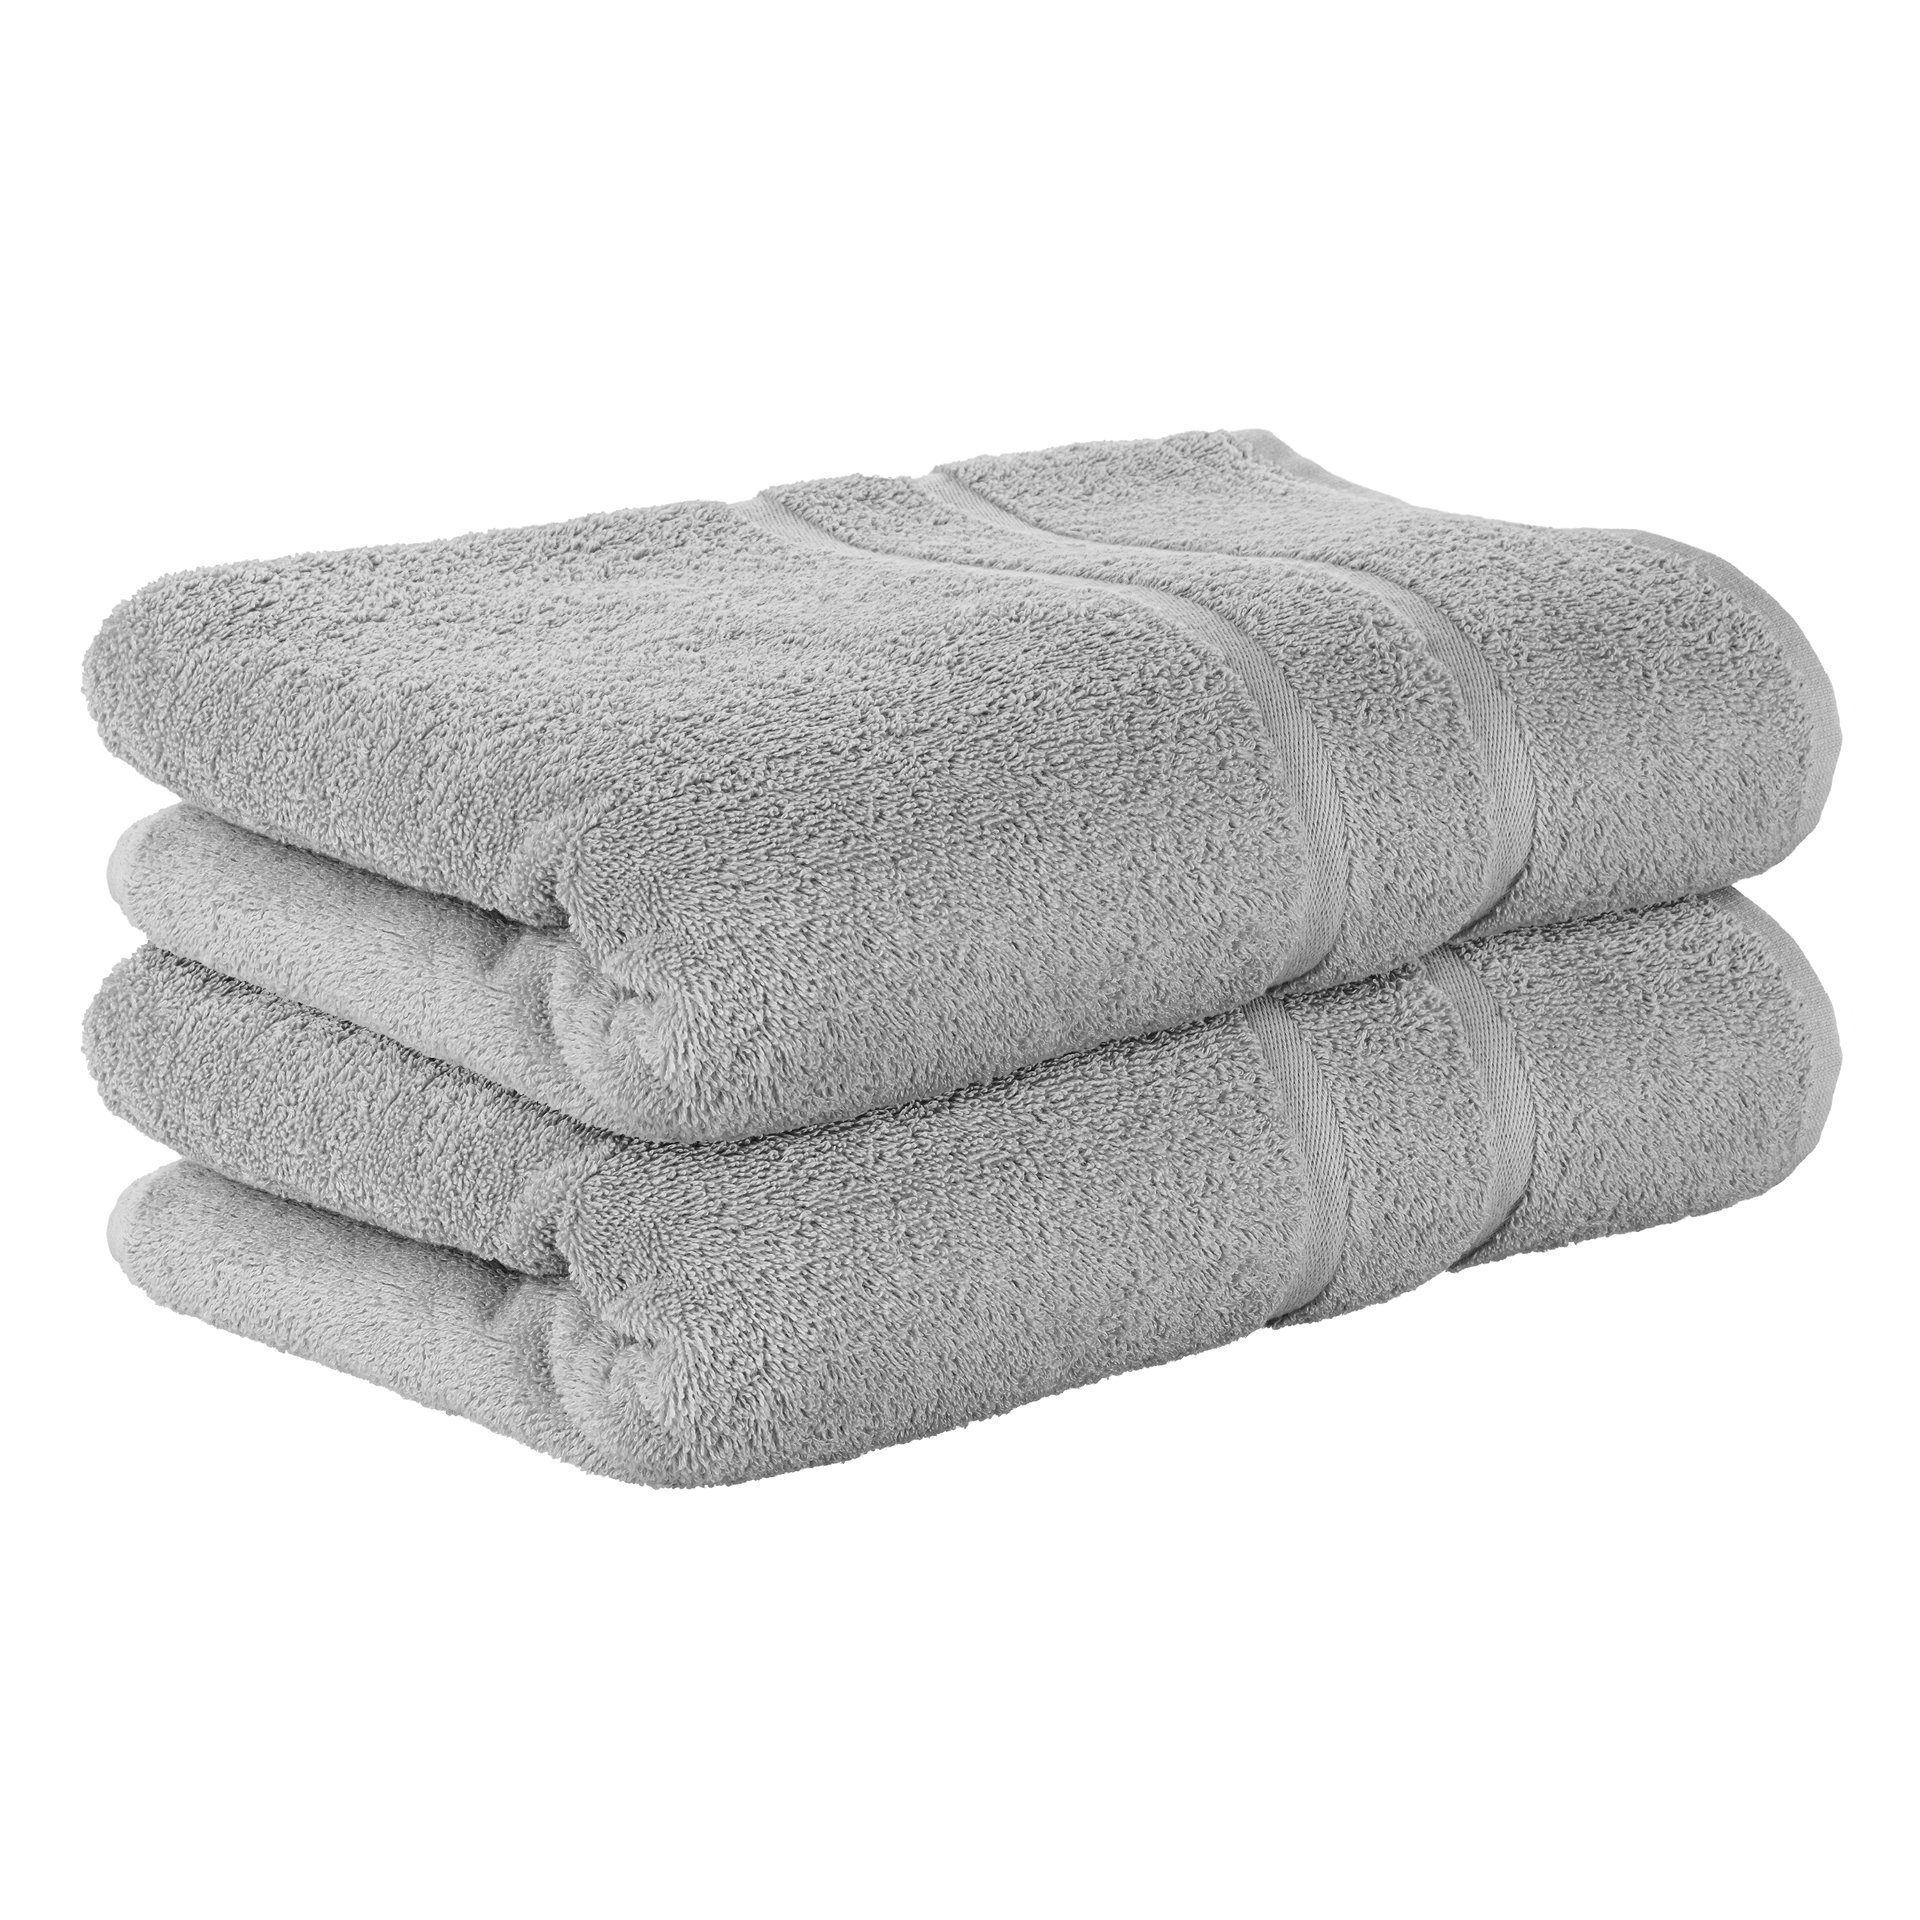 StickandShine Handtuch 2er Set Premium Frottee Handtuch 50x100 cm in 500g/m² aus 100% Baumwolle (2 Stück), 100% Baumwolle 500GSM Frottee Mittelgrau